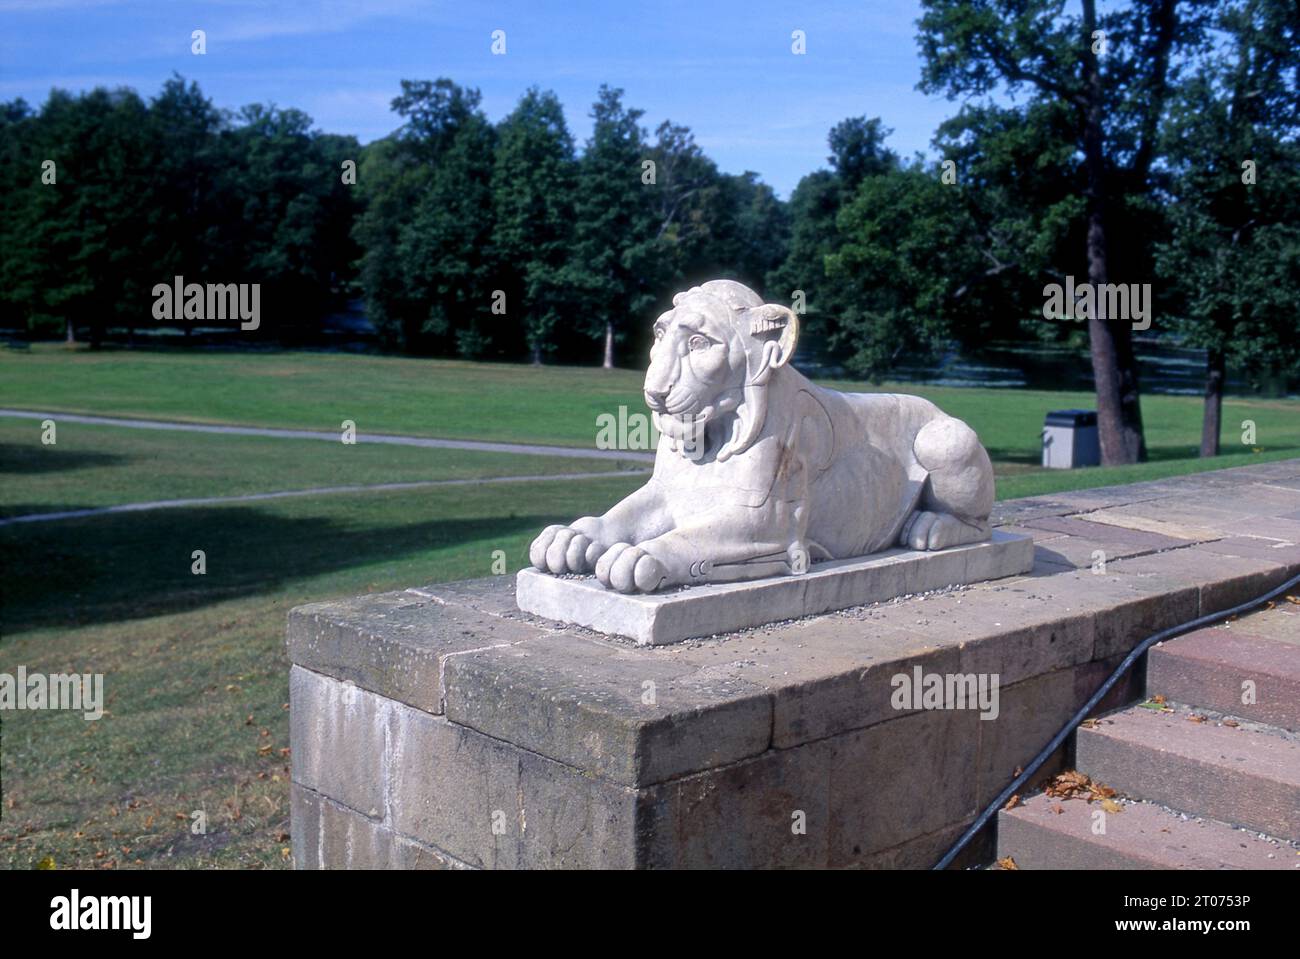 Statuaire et jardin du lion au palais de Solliden, palais d'été du roi à Oland, Suède, Europe Banque D'Images